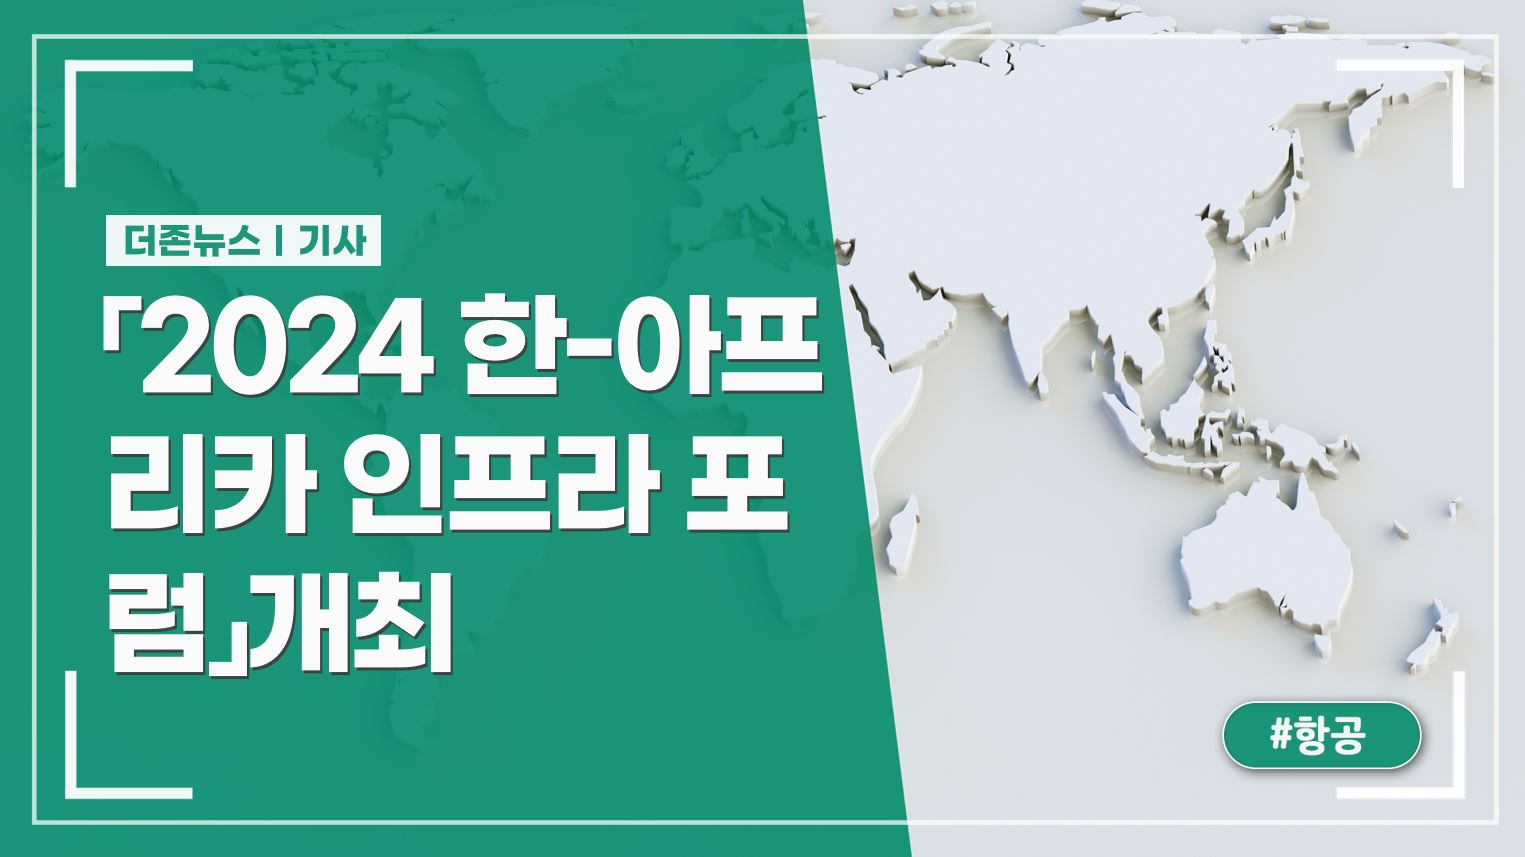 5일,서울에서「2024 한-아프리카 인프라 포럼」개최